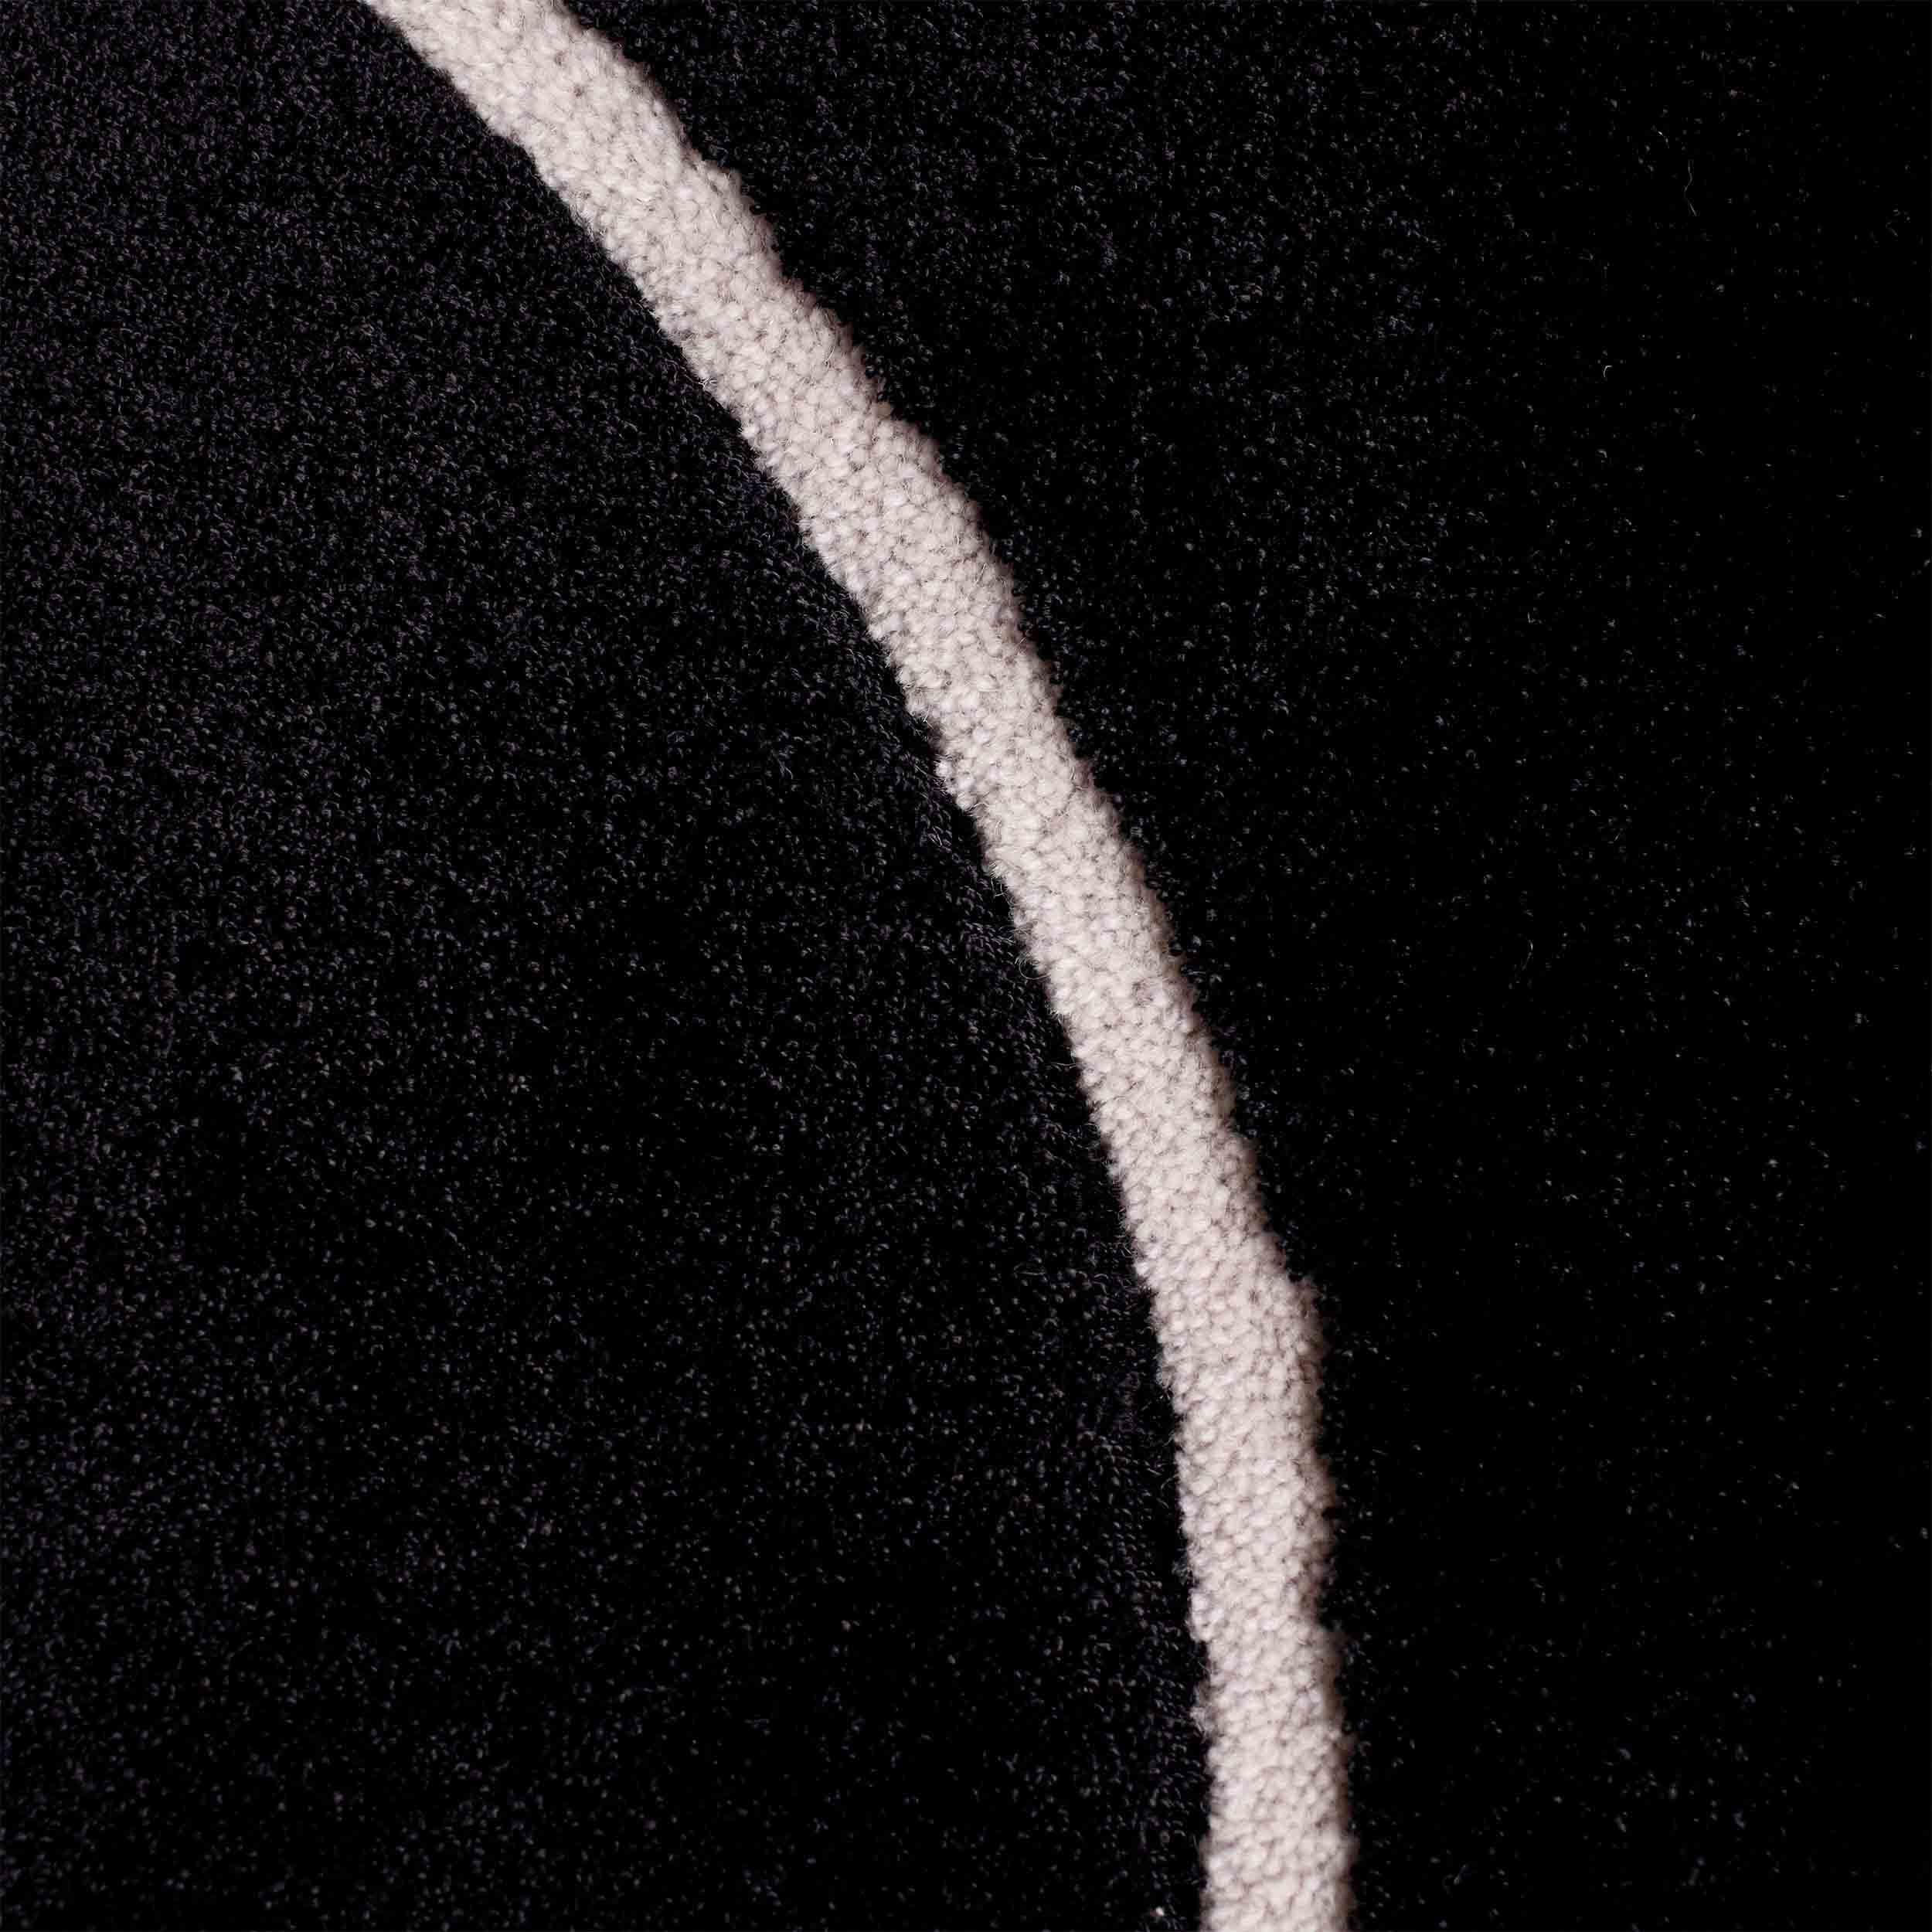 Midnight Black Squiggle hat eine weiche und glänzende Viskoseoberfläche.

Größe: 8 x 11 Fuß 
MATERIAL: Viskose + Wolle
Farbe: Schwarz + Weiß*
Hergestellt in Schweden

*Farben können aufgrund von Beleuchtung und Fotografie variieren